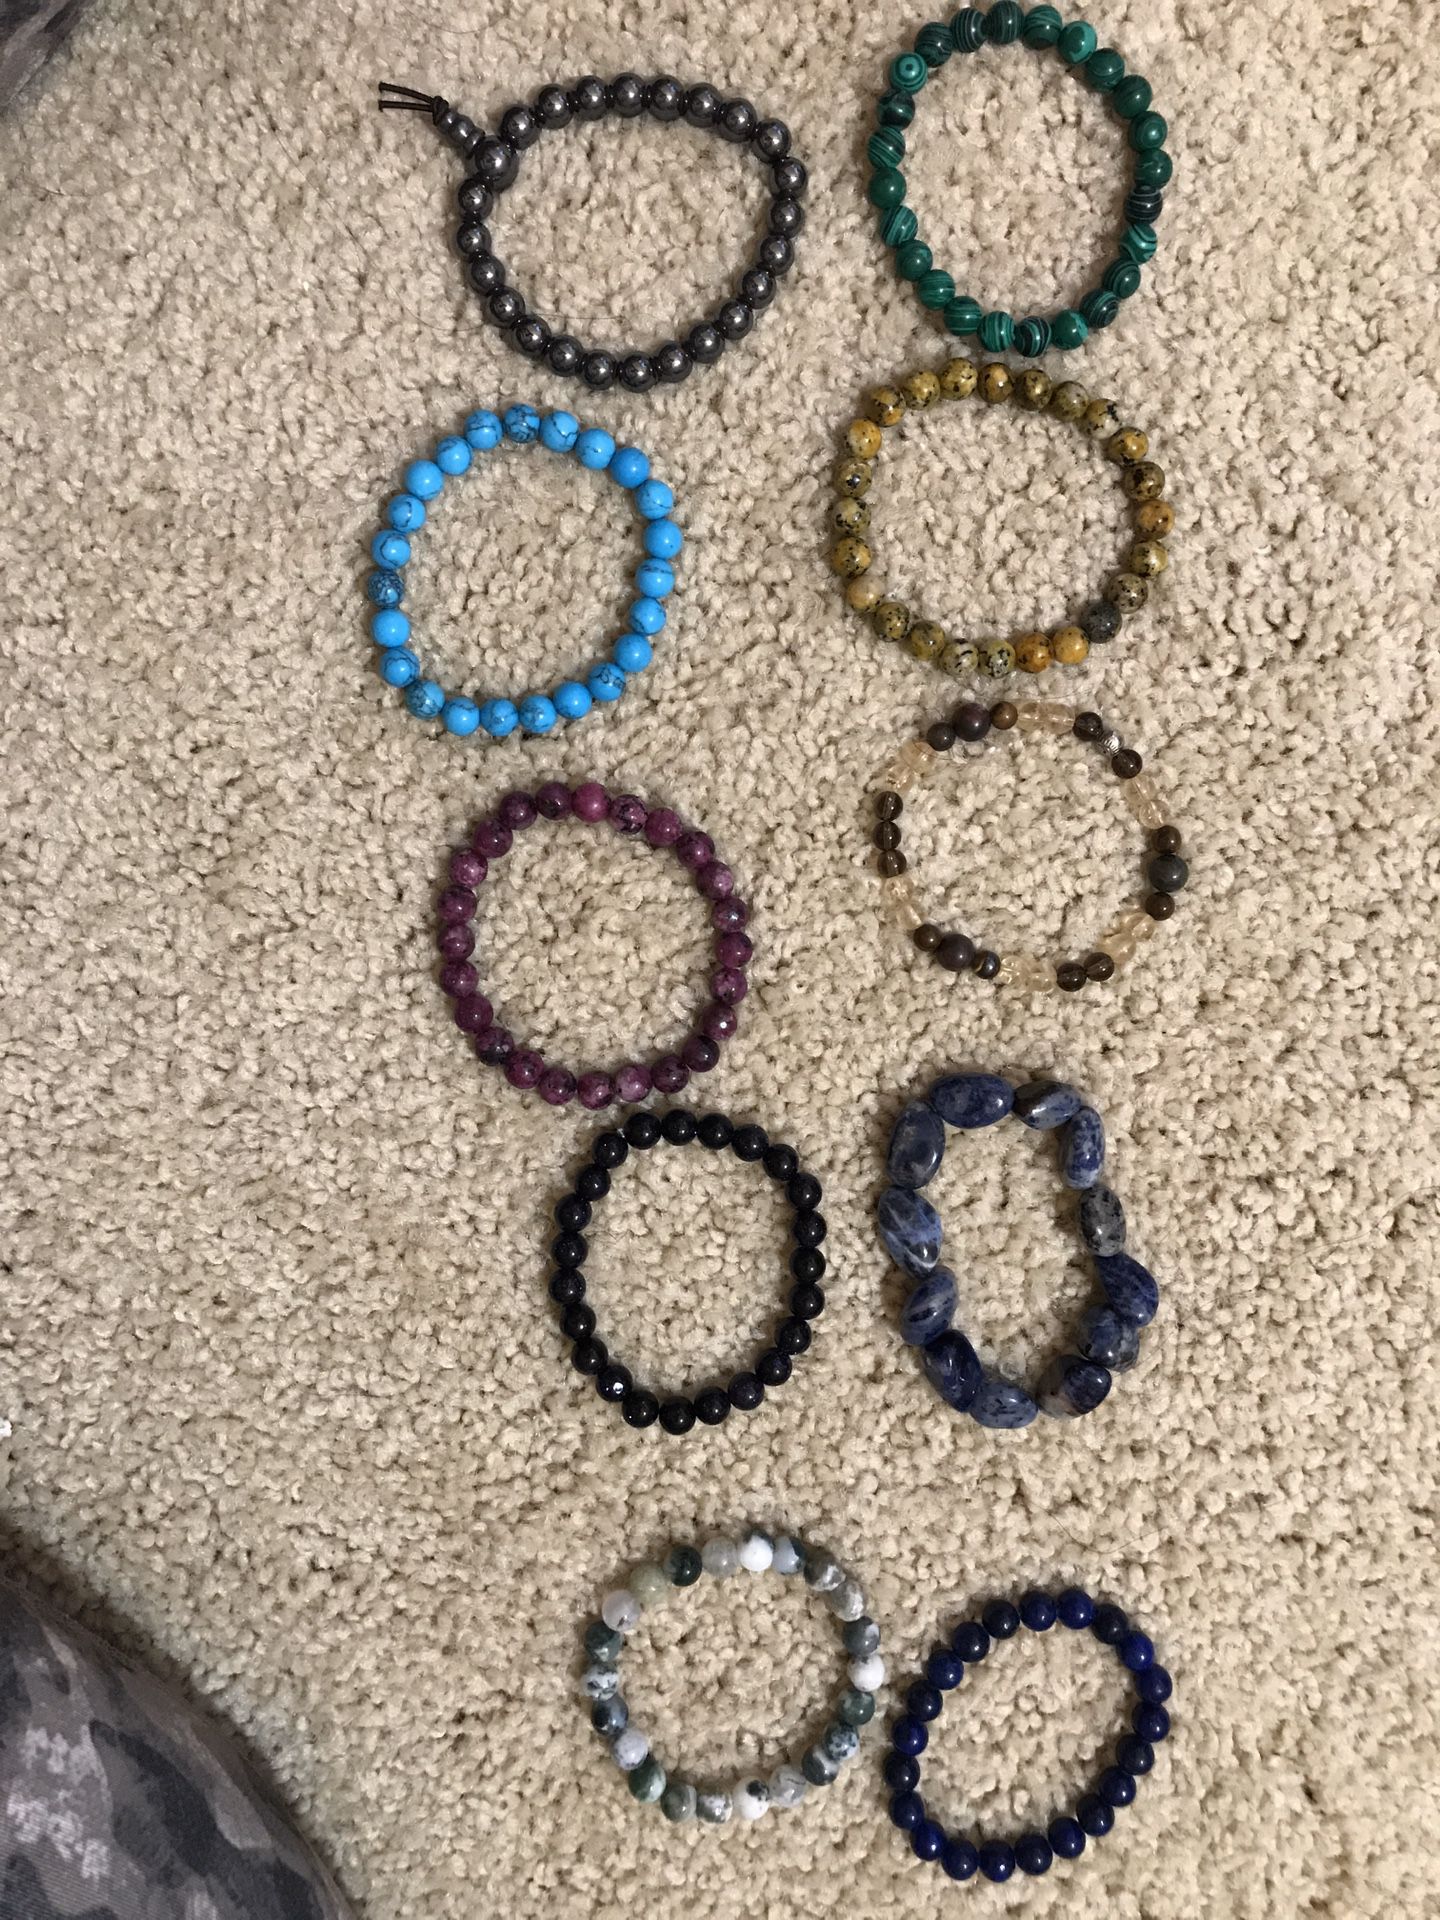 Authentic gem bracelets